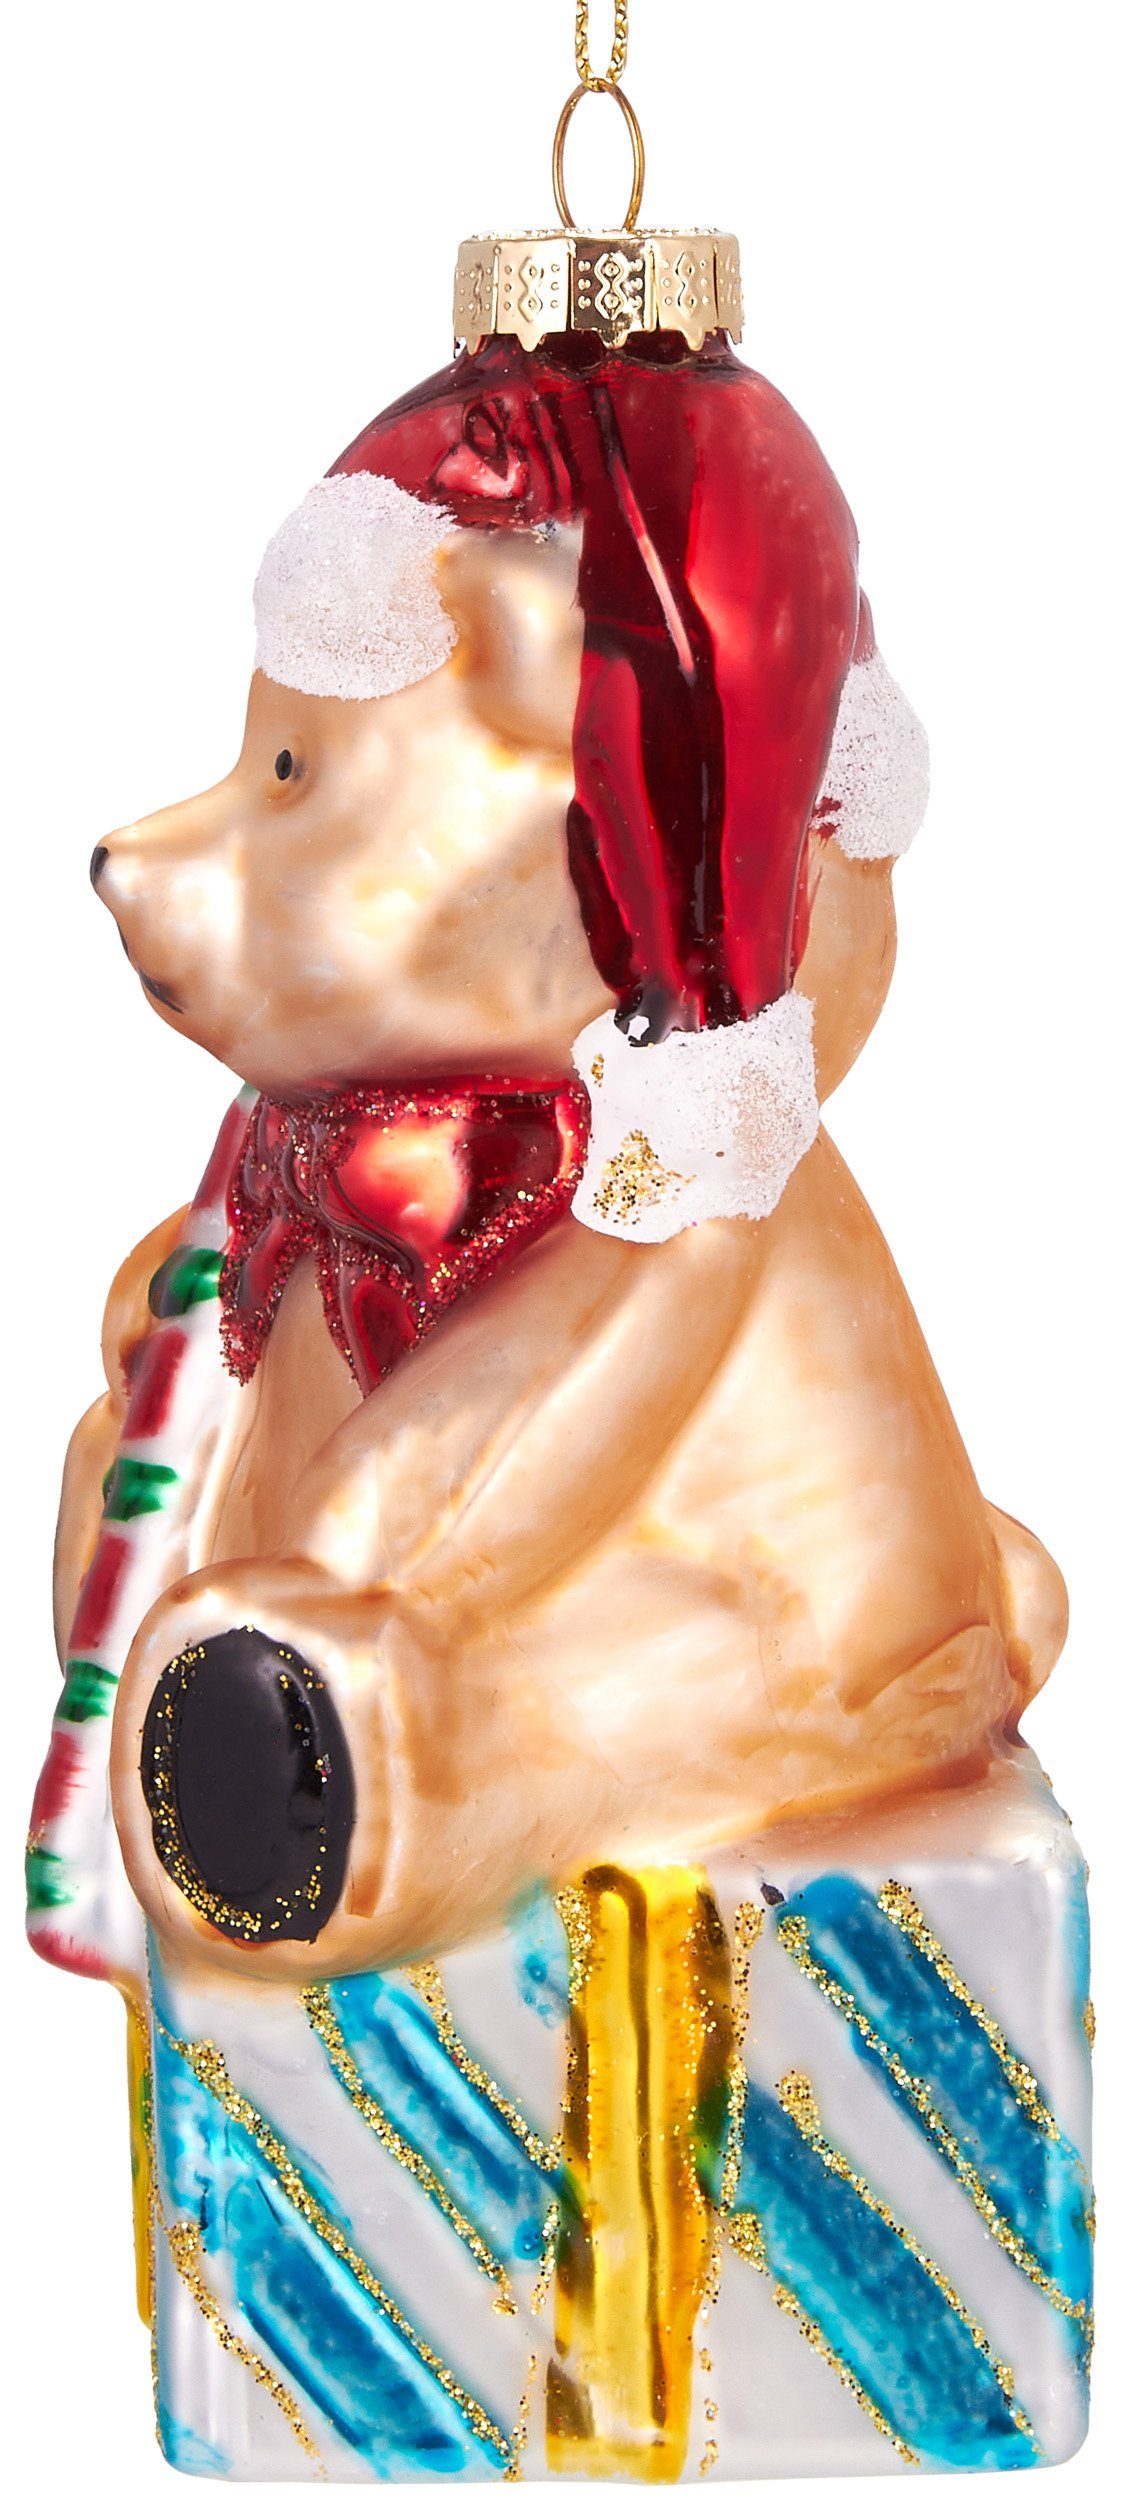 BRUBAKER Christbaumschmuck Zuckerstange, cm süße Weihnachtskugel - 13 Glas, mit Unikat mundgeblasenes Weihnachtsdekoration Handbemalte Teddy aus